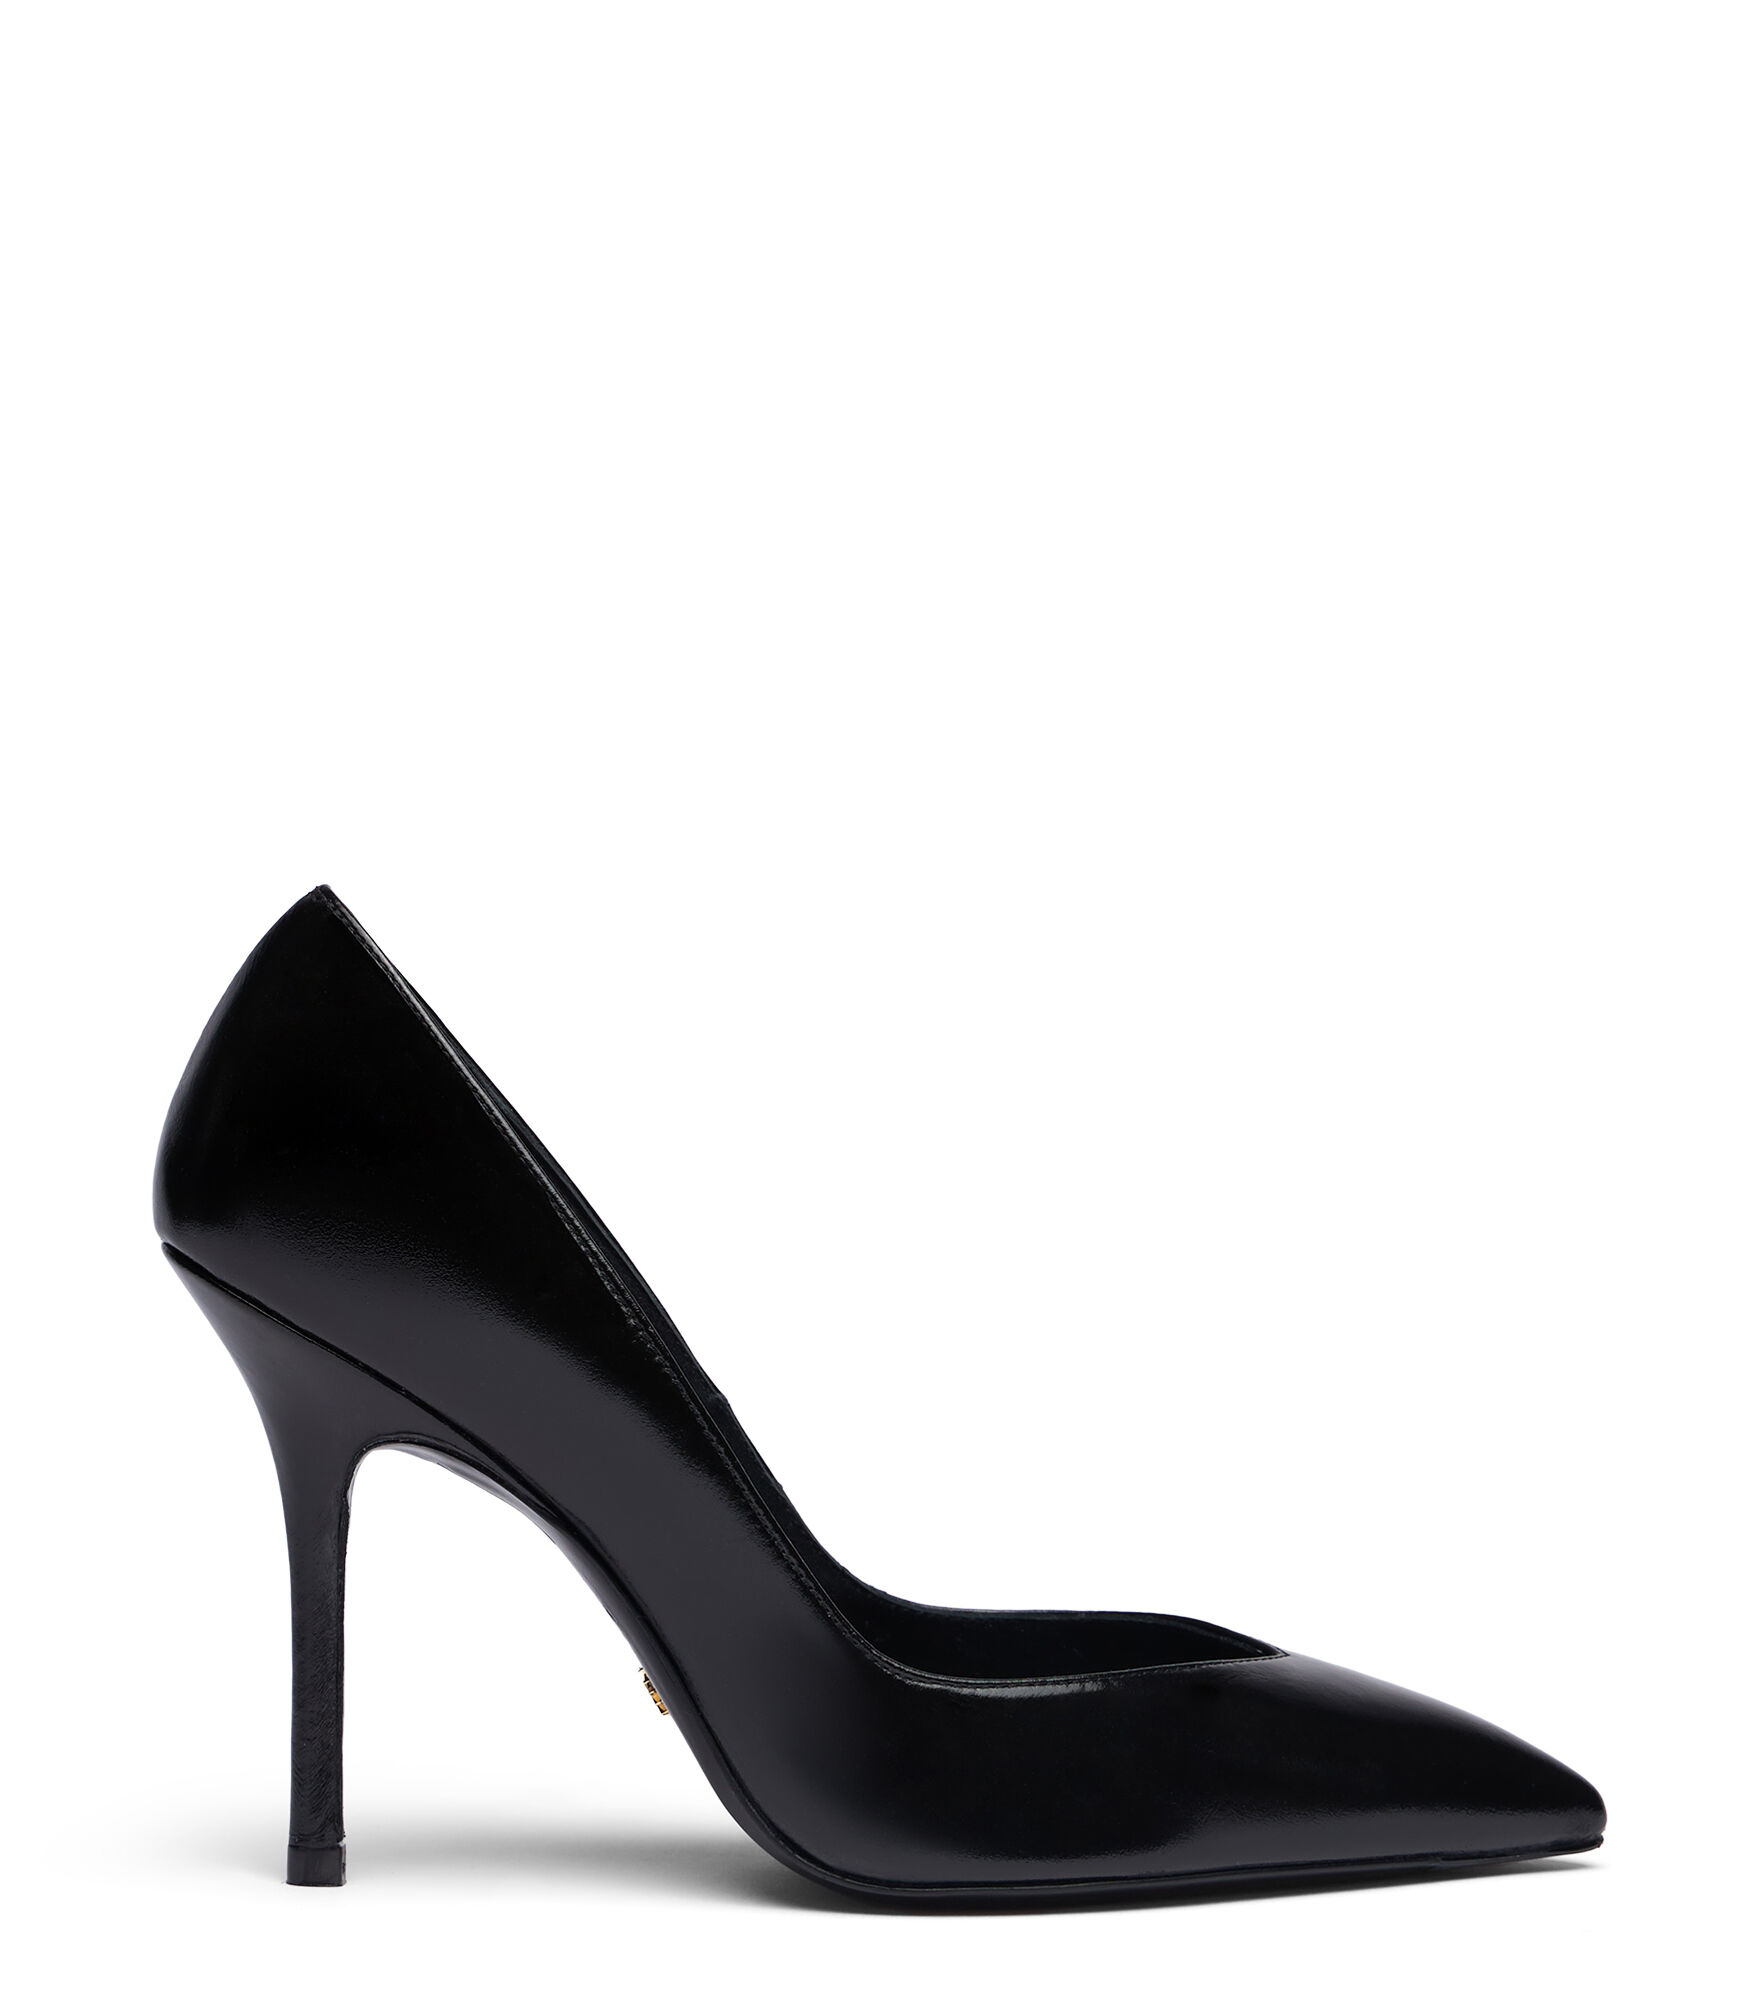 Women's Black Leather Pumps - Black Court Shoes | Stuart Weitzman®